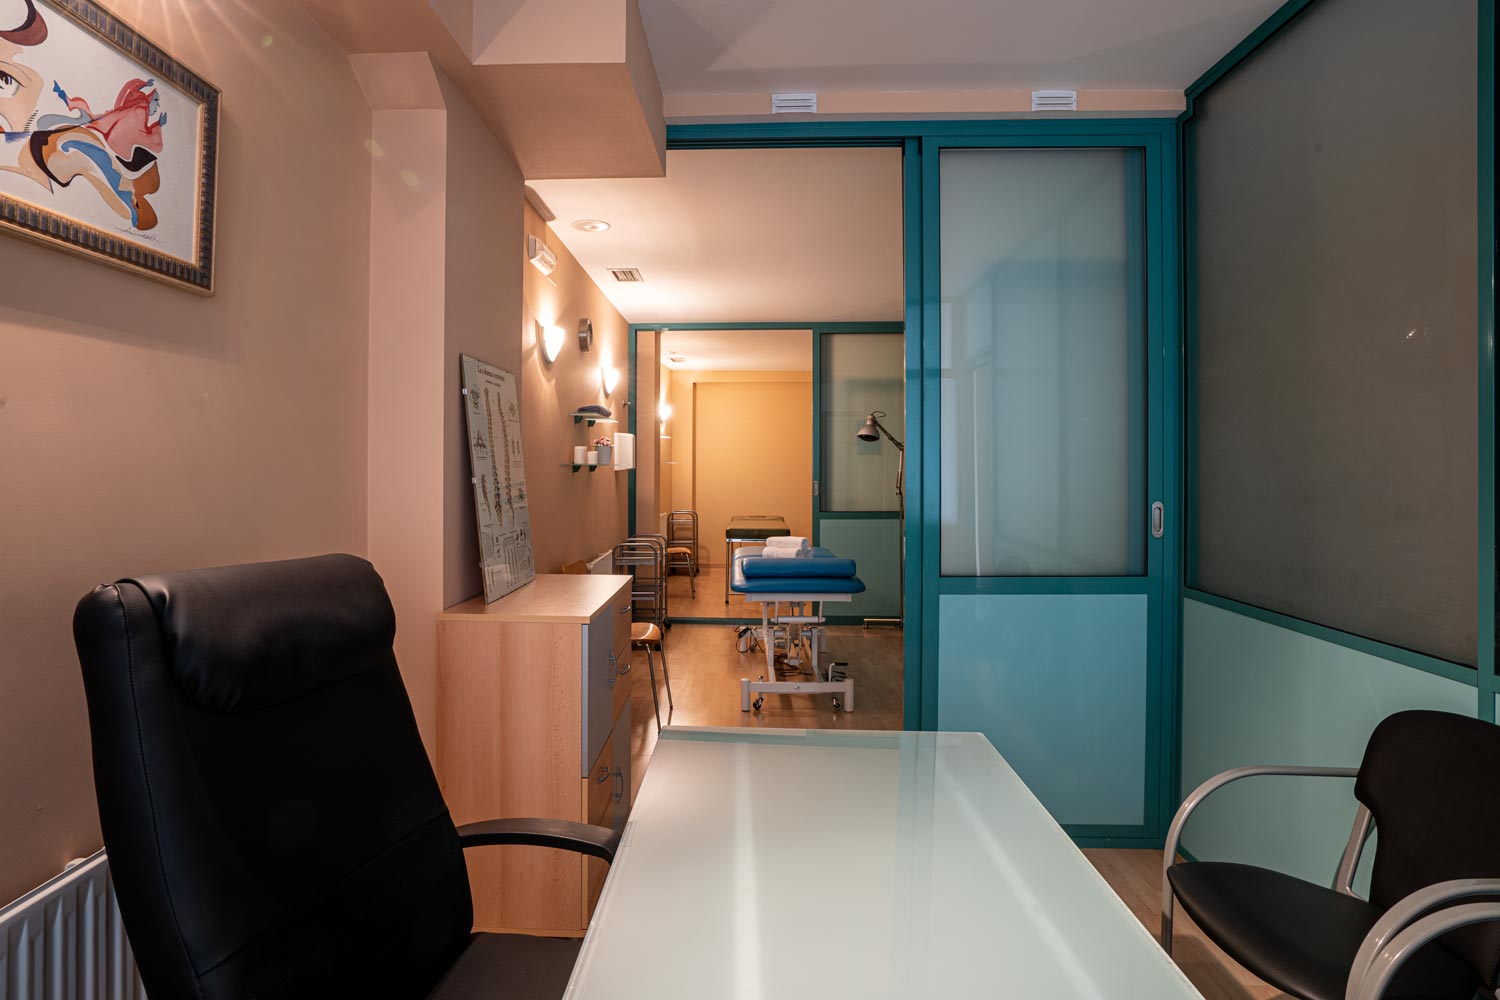 Interior de local comercial terapias naturales. Vemos el despacho y distintos gabinetes con camillas azules comunicados por puertas verdes abiertas